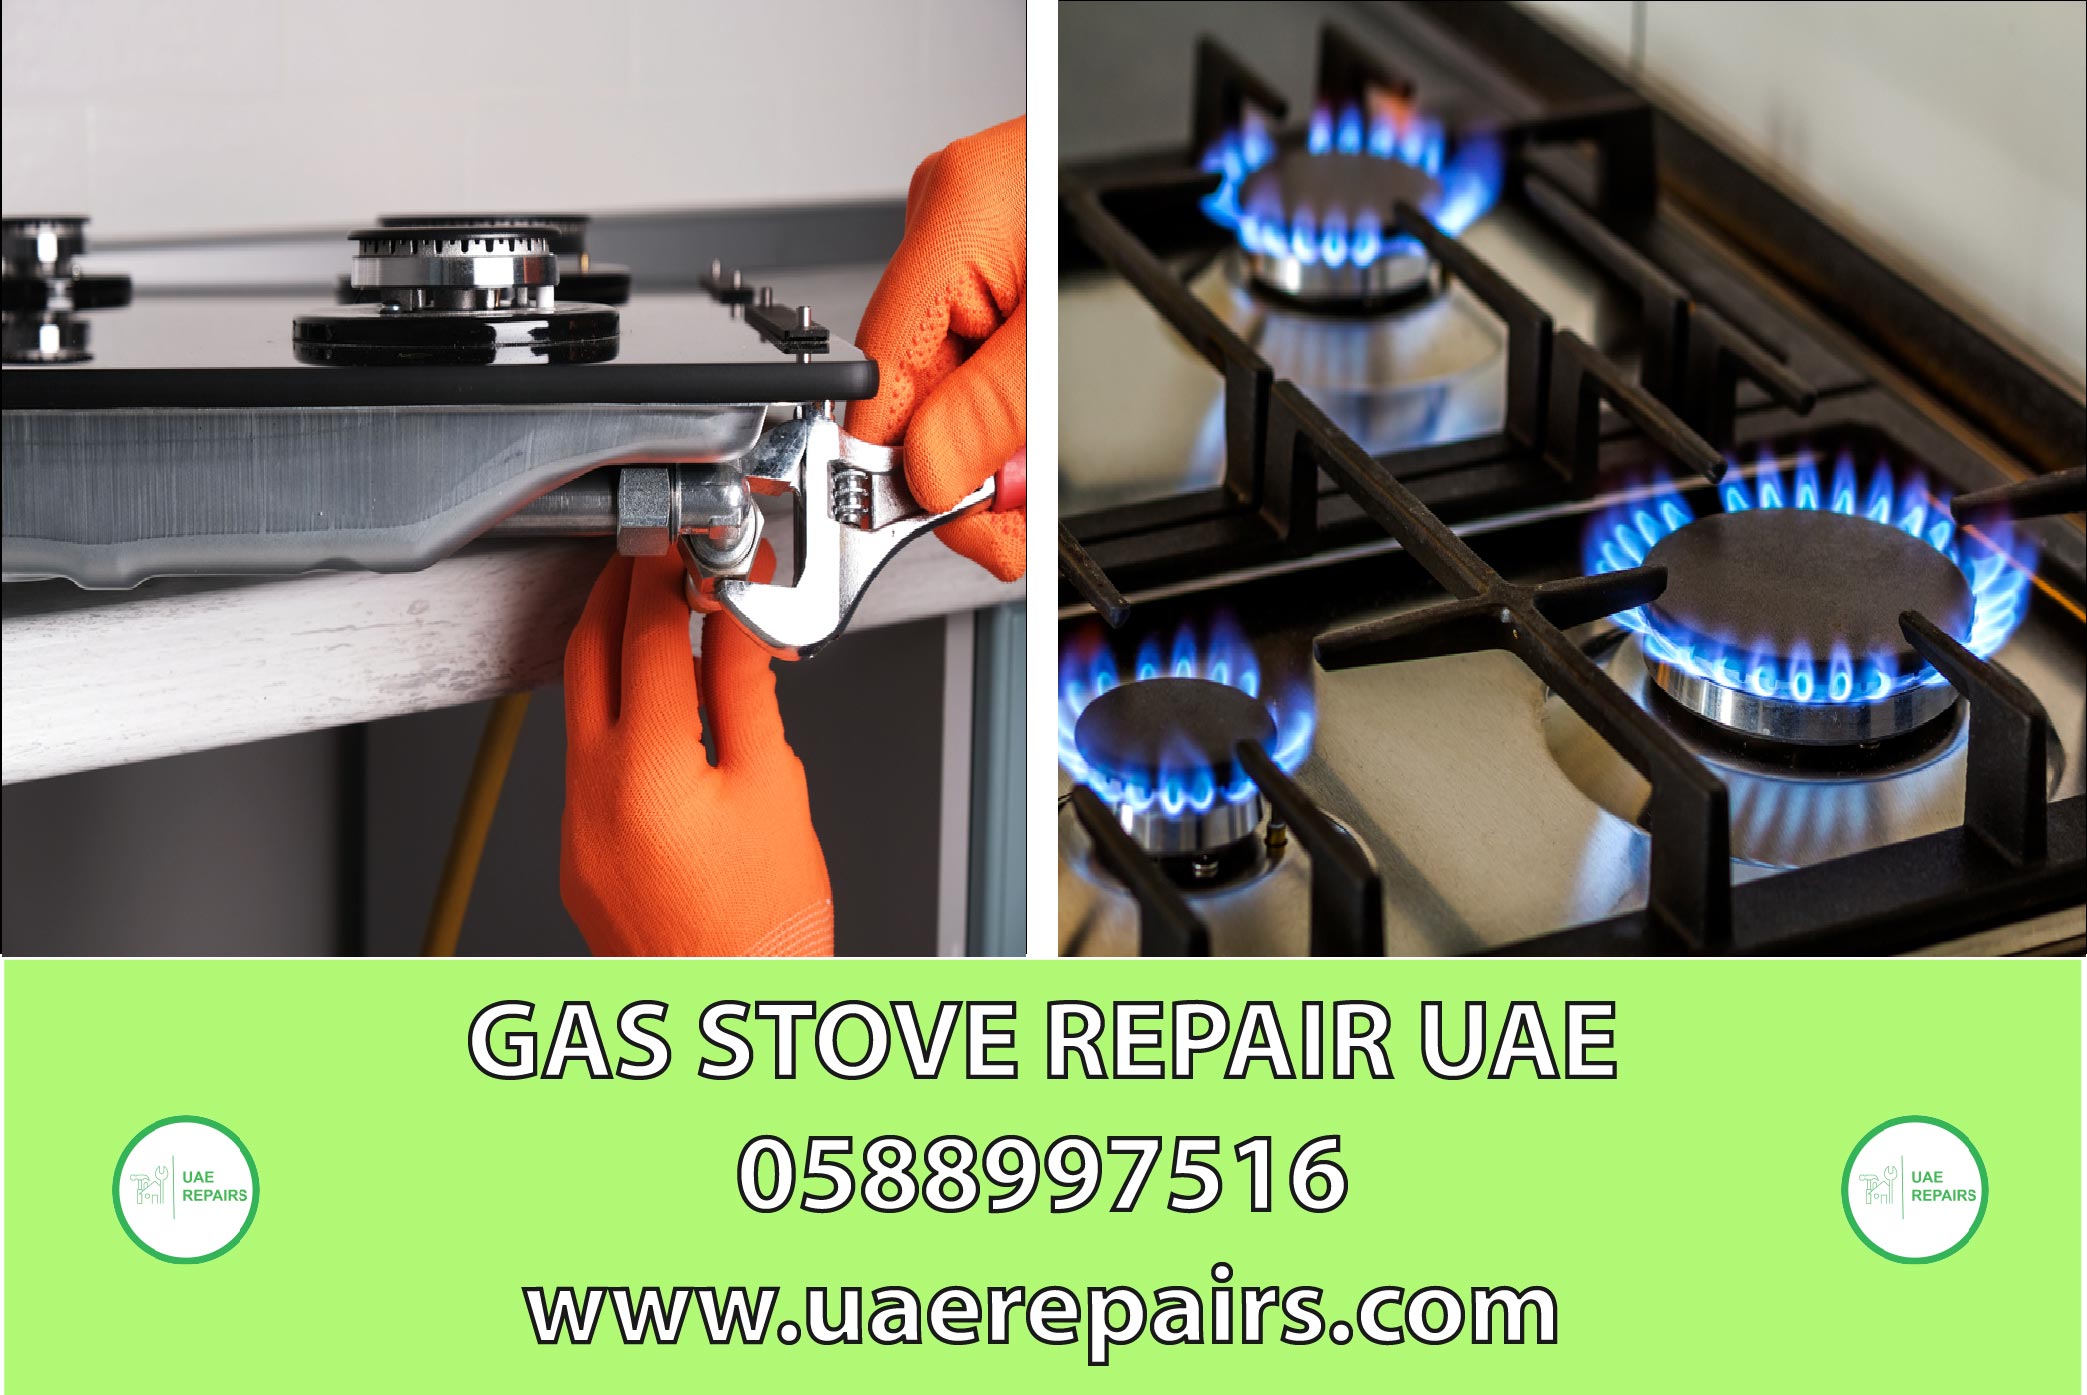 UAE REPAIRS GAS STOVE REPAIR SERVICE CONTACT US 0588997516